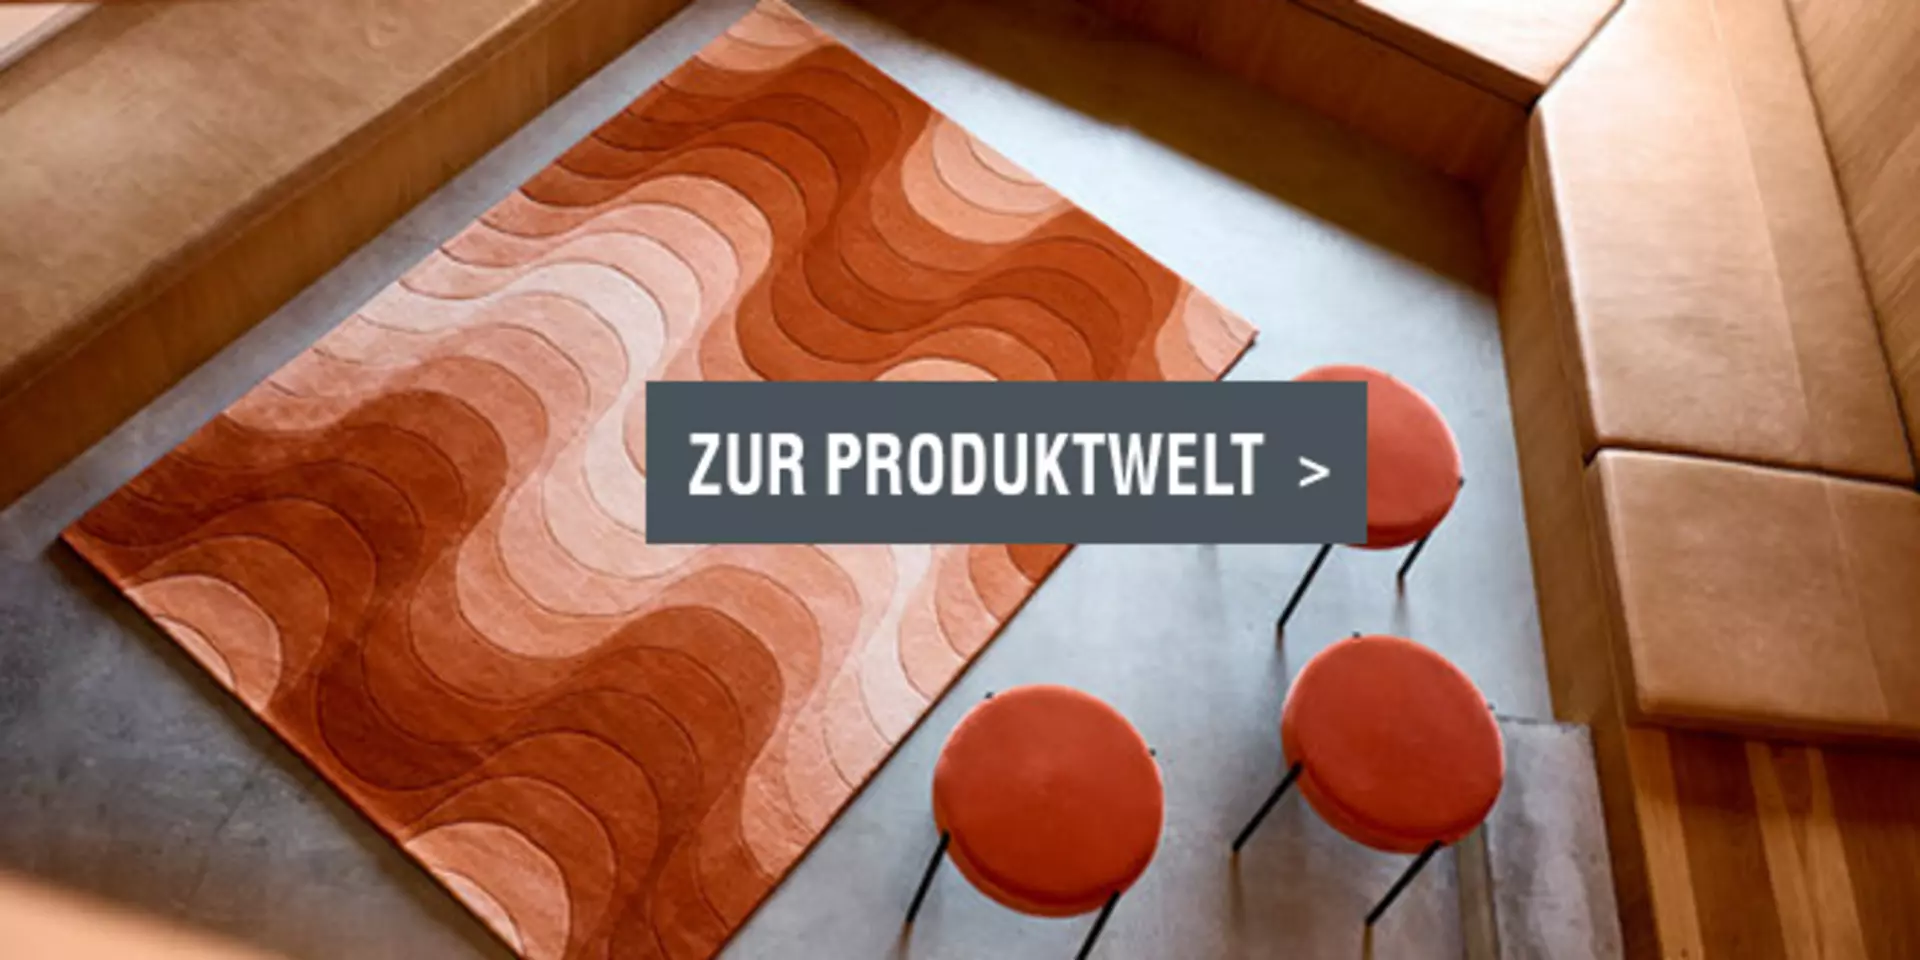 Linkbild zur Teppich-Produktwelt